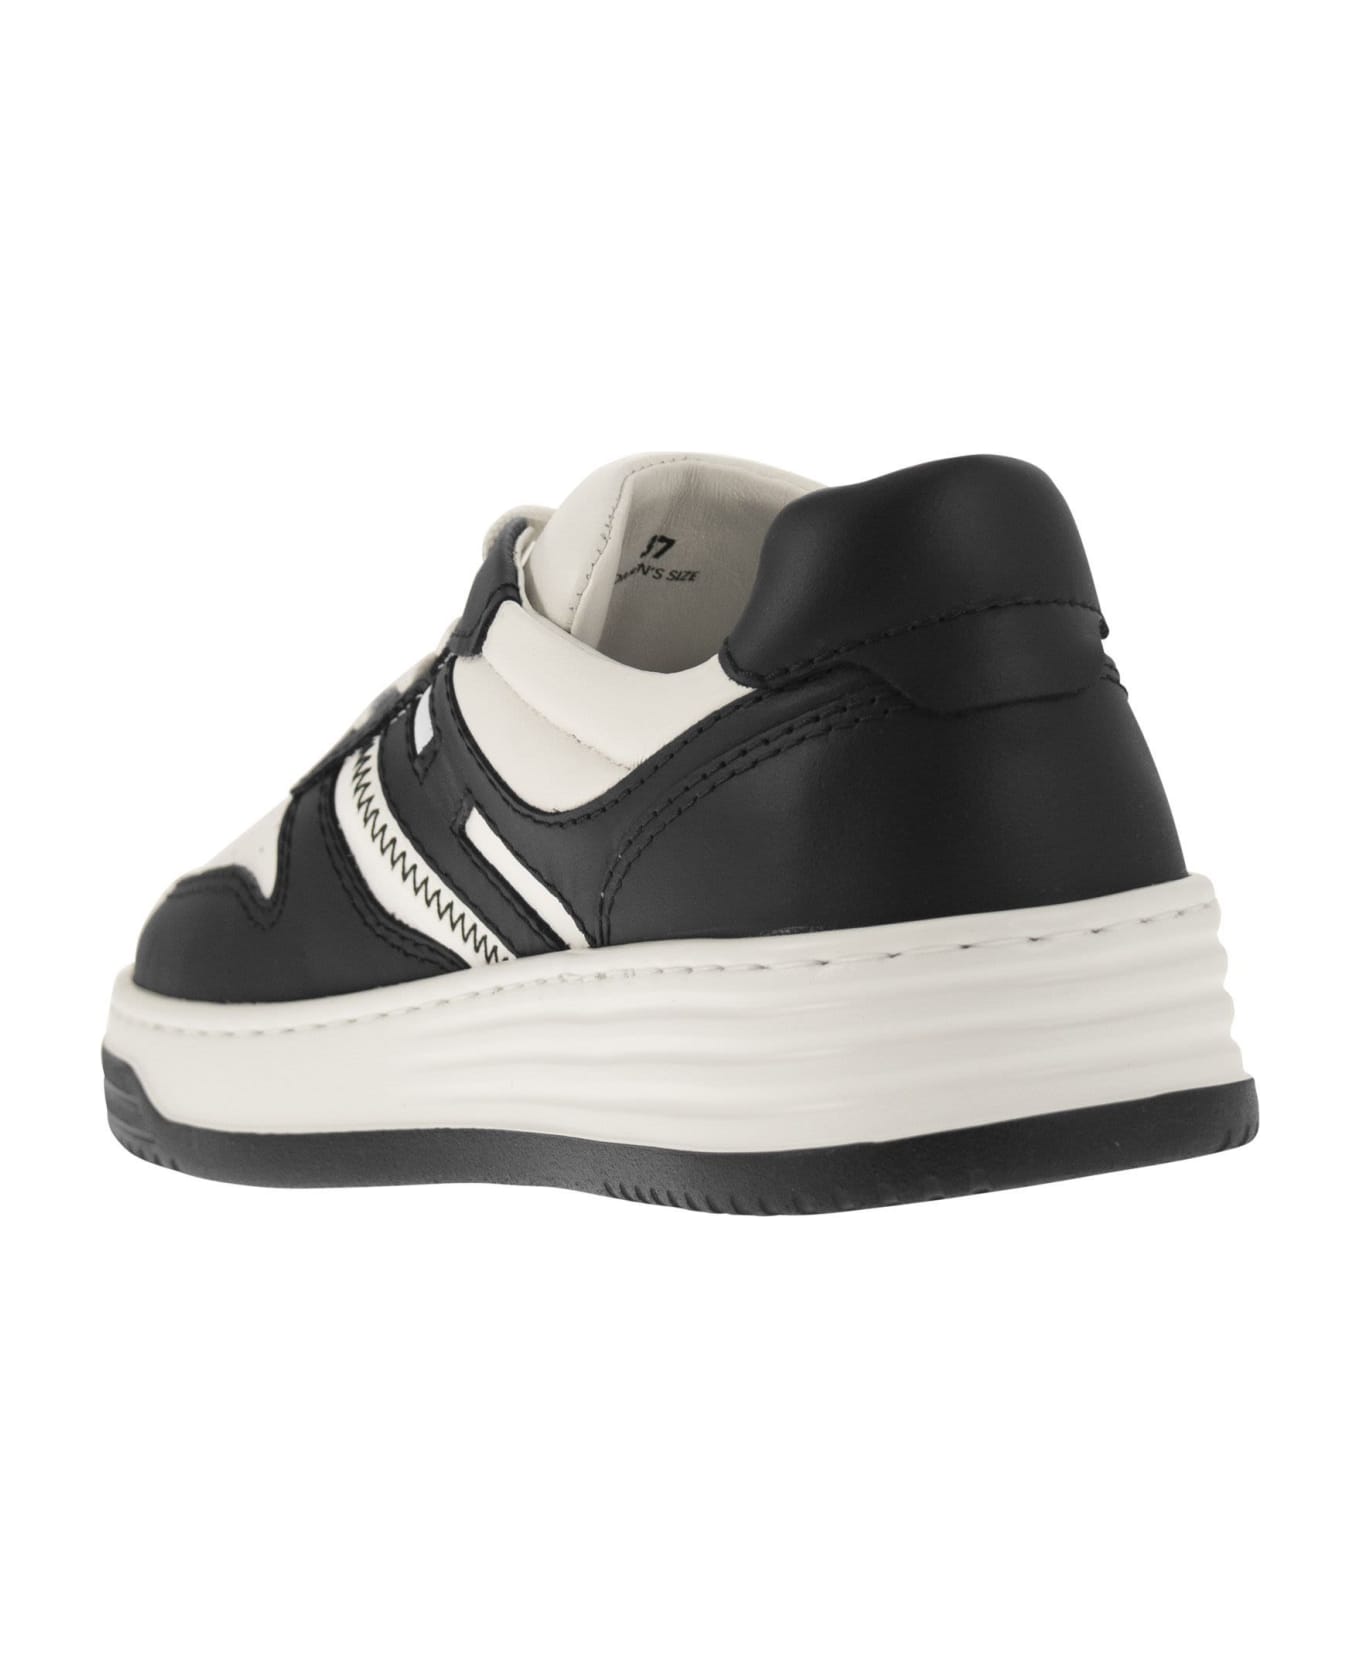 Hogan Sneakers H630 - White/black スニーカー